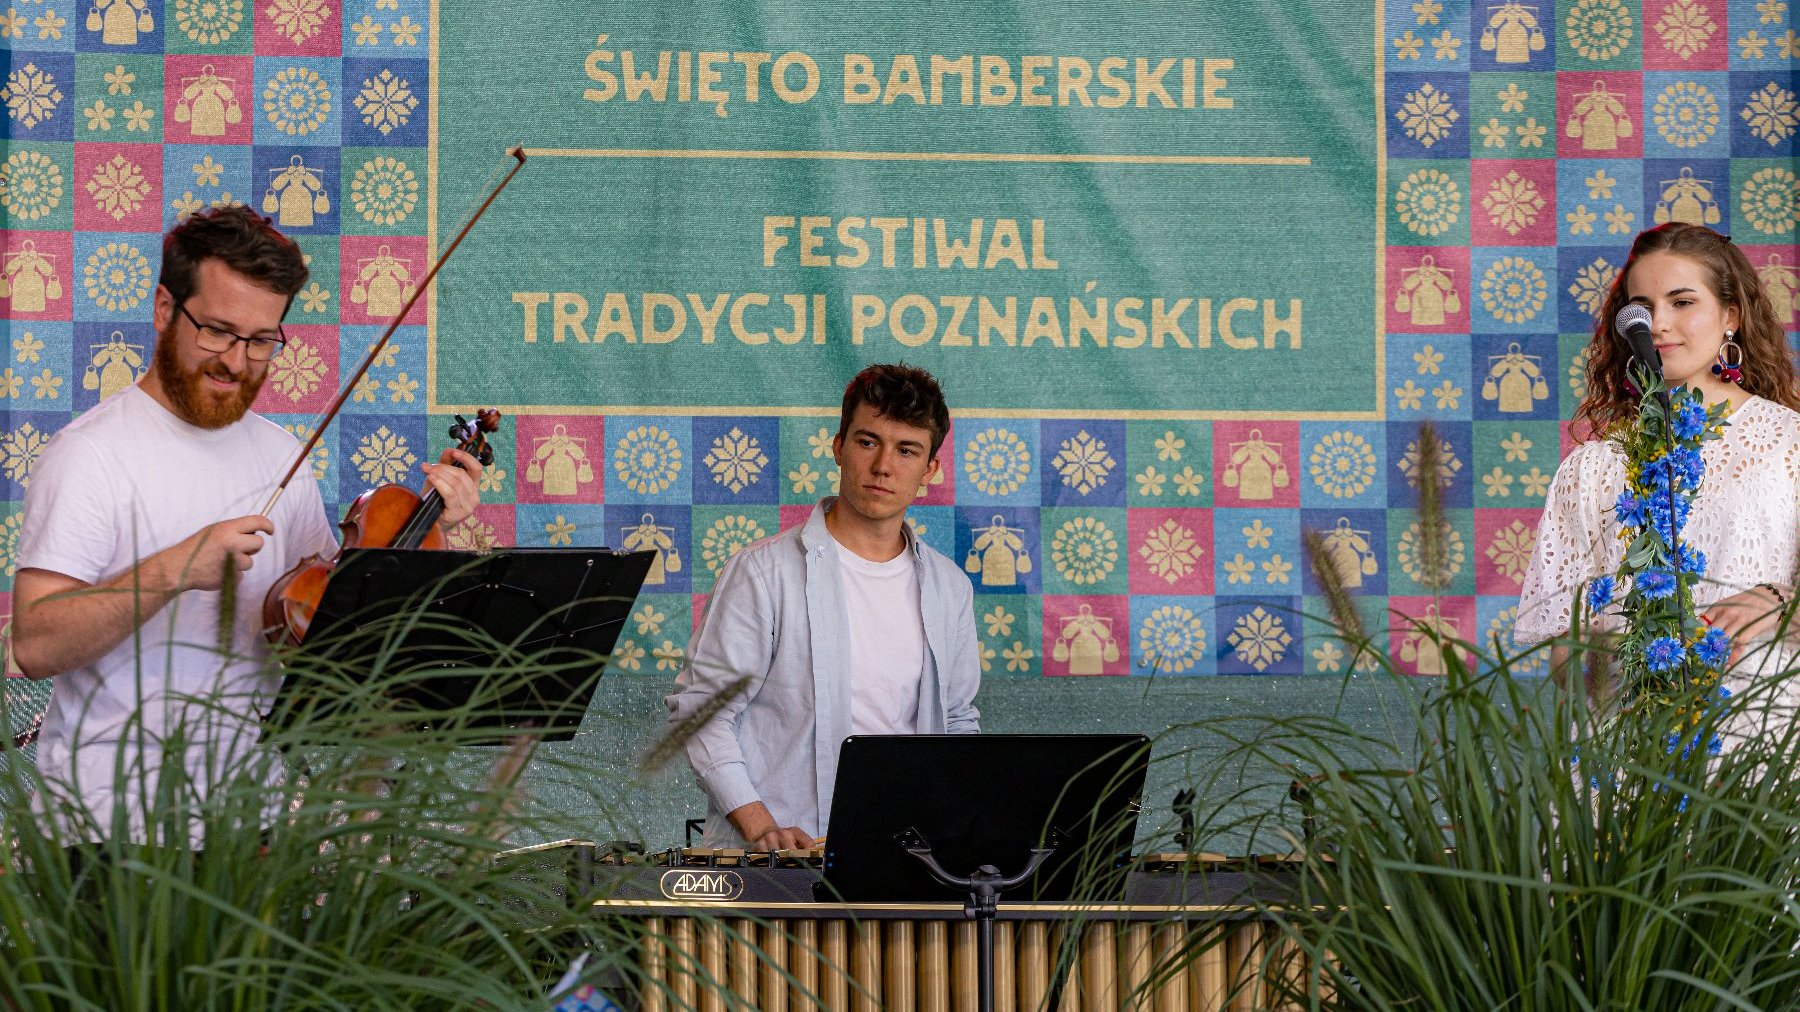 Na zdjeciu troje muzyków na scenie, w tle napis: święto bamberskie, festiwal tradycji poznańskich